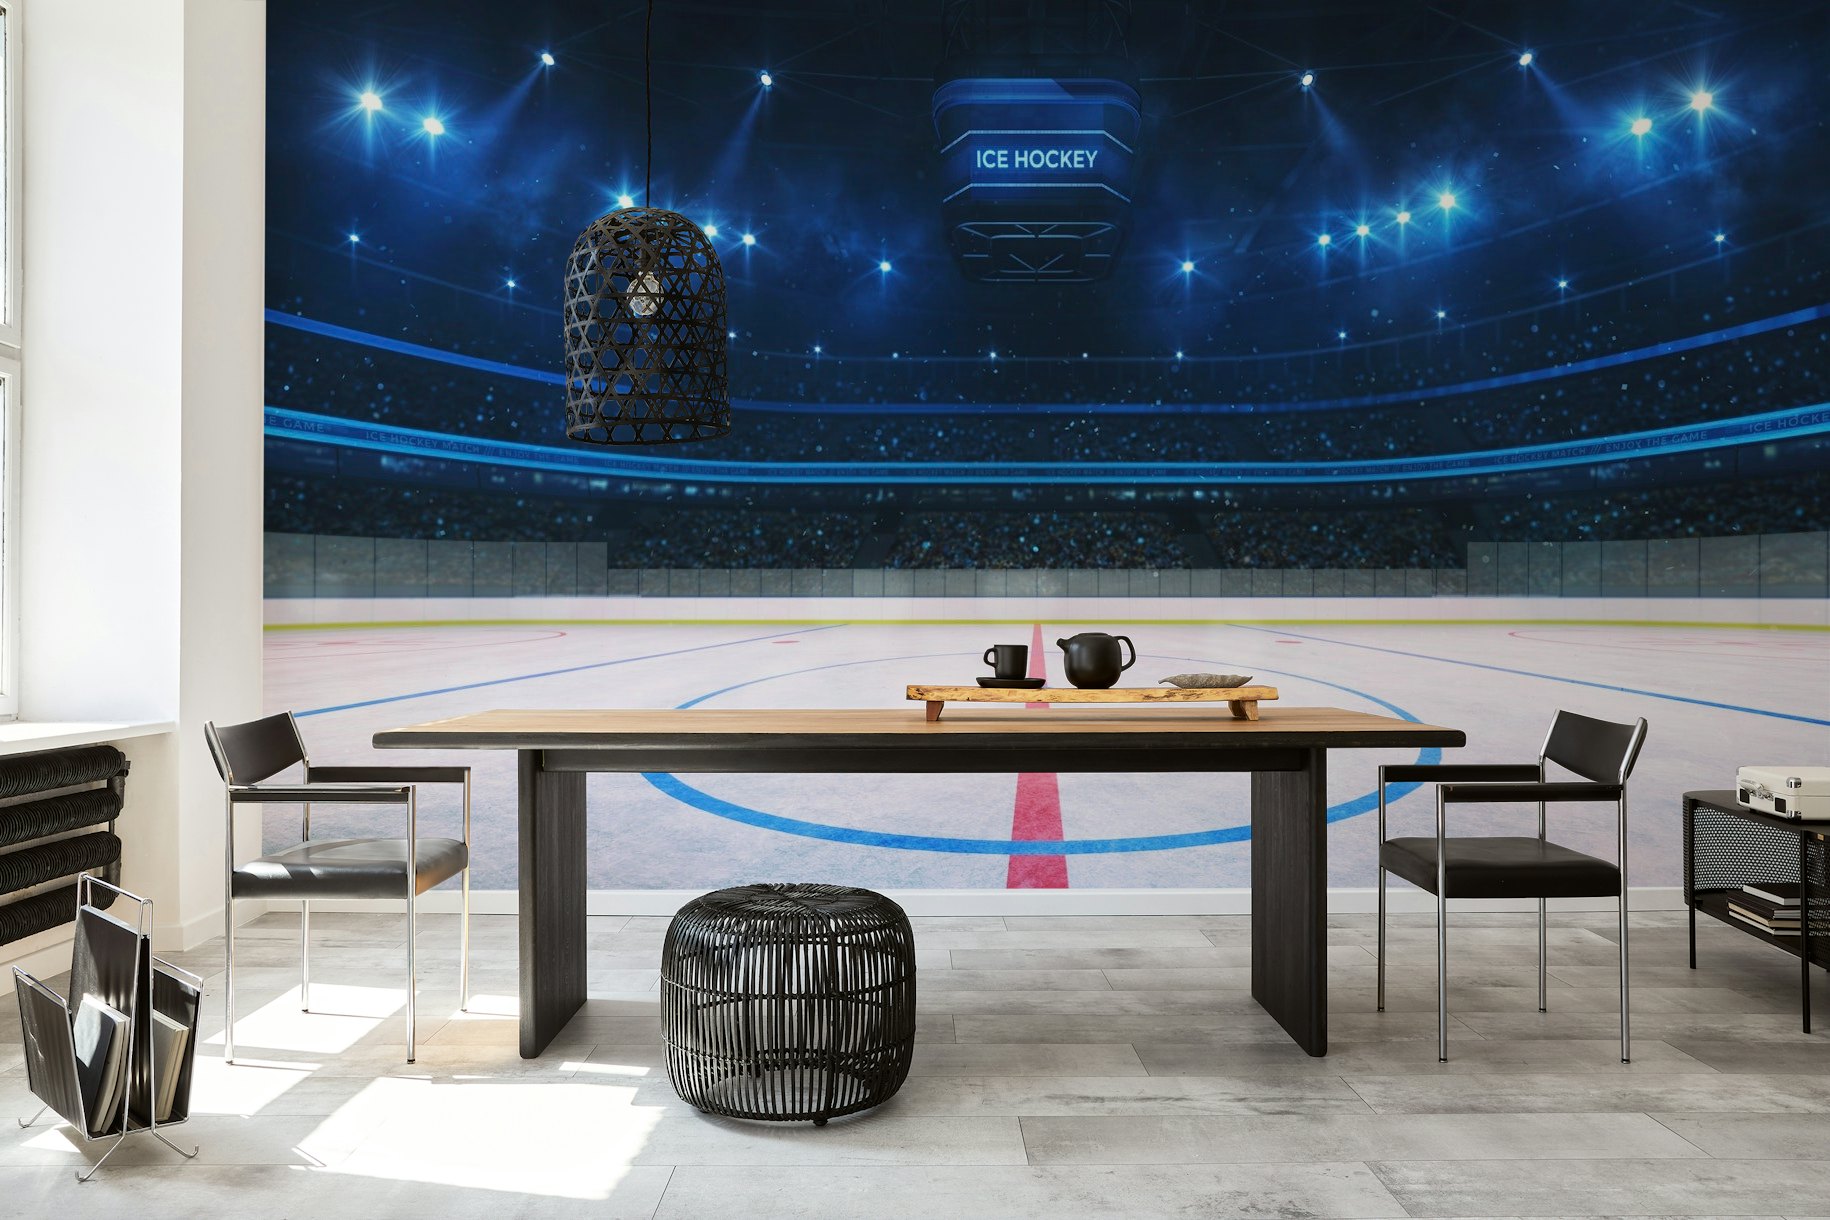 Ice hockey rink wallpaper